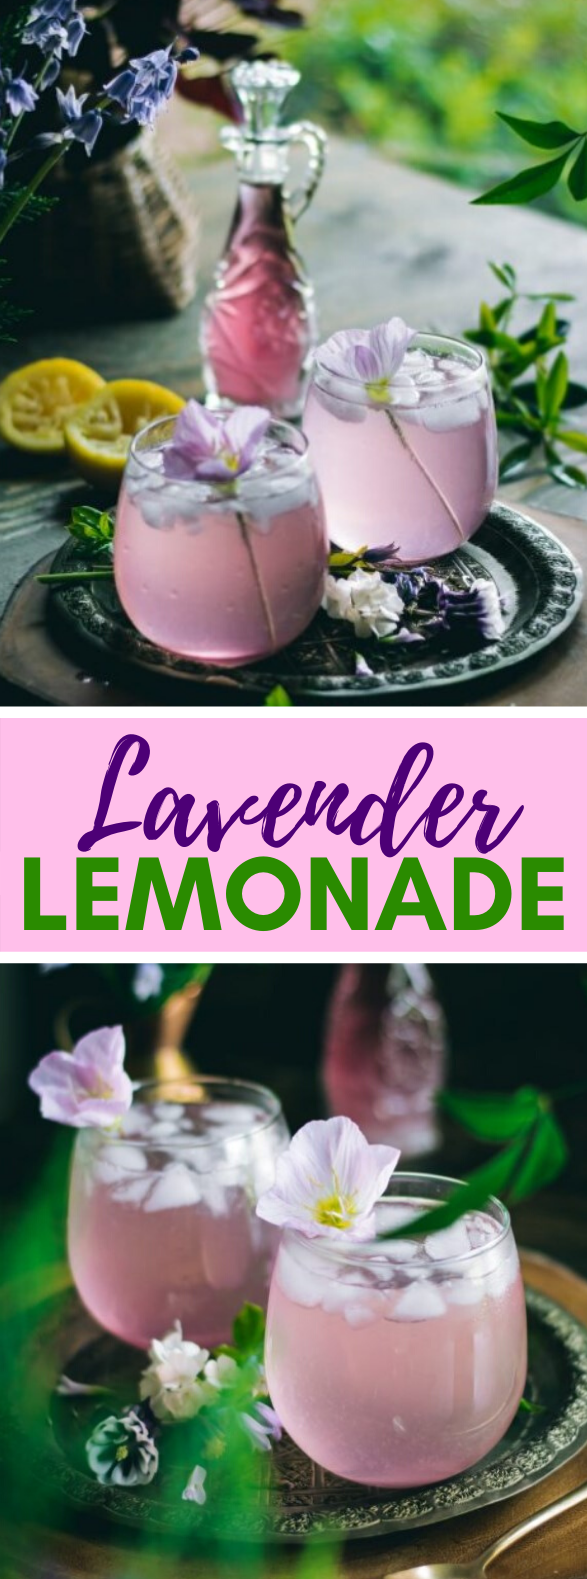 LAVENDER LEMONADE #drinks #homemade